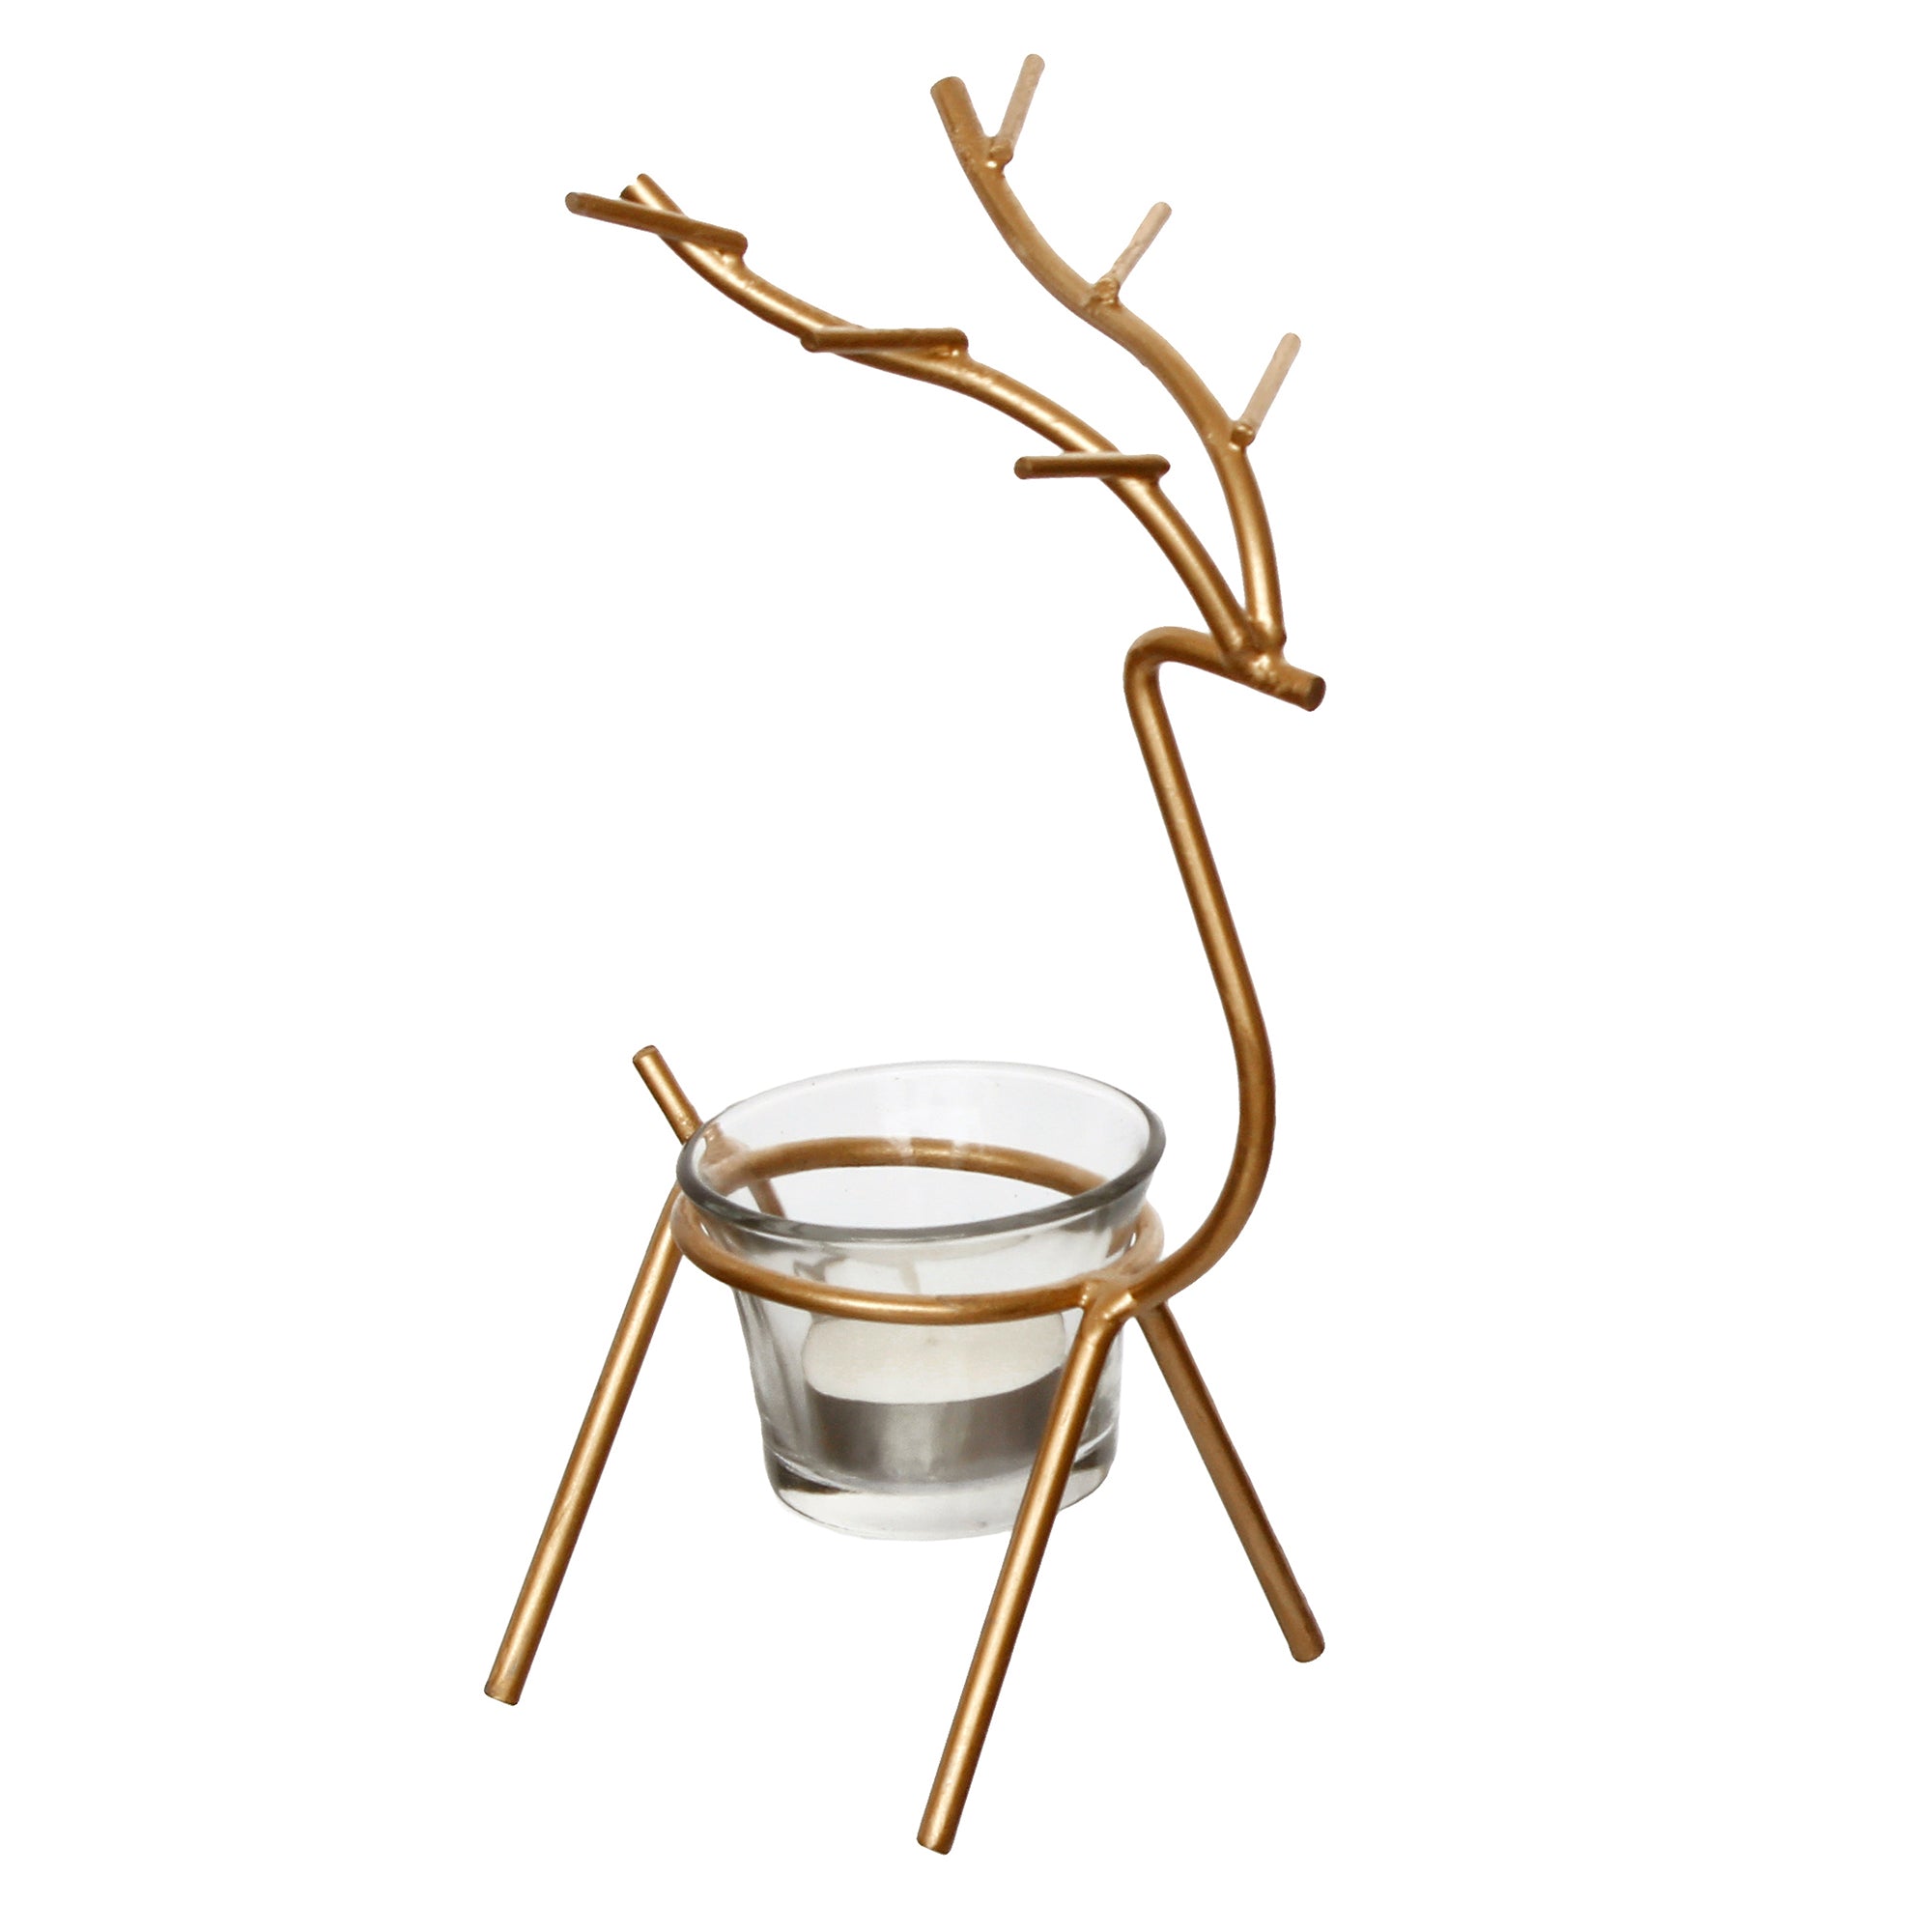 Deer Shape Decorative Handcrafted Metal Golden tea light candle holder 2